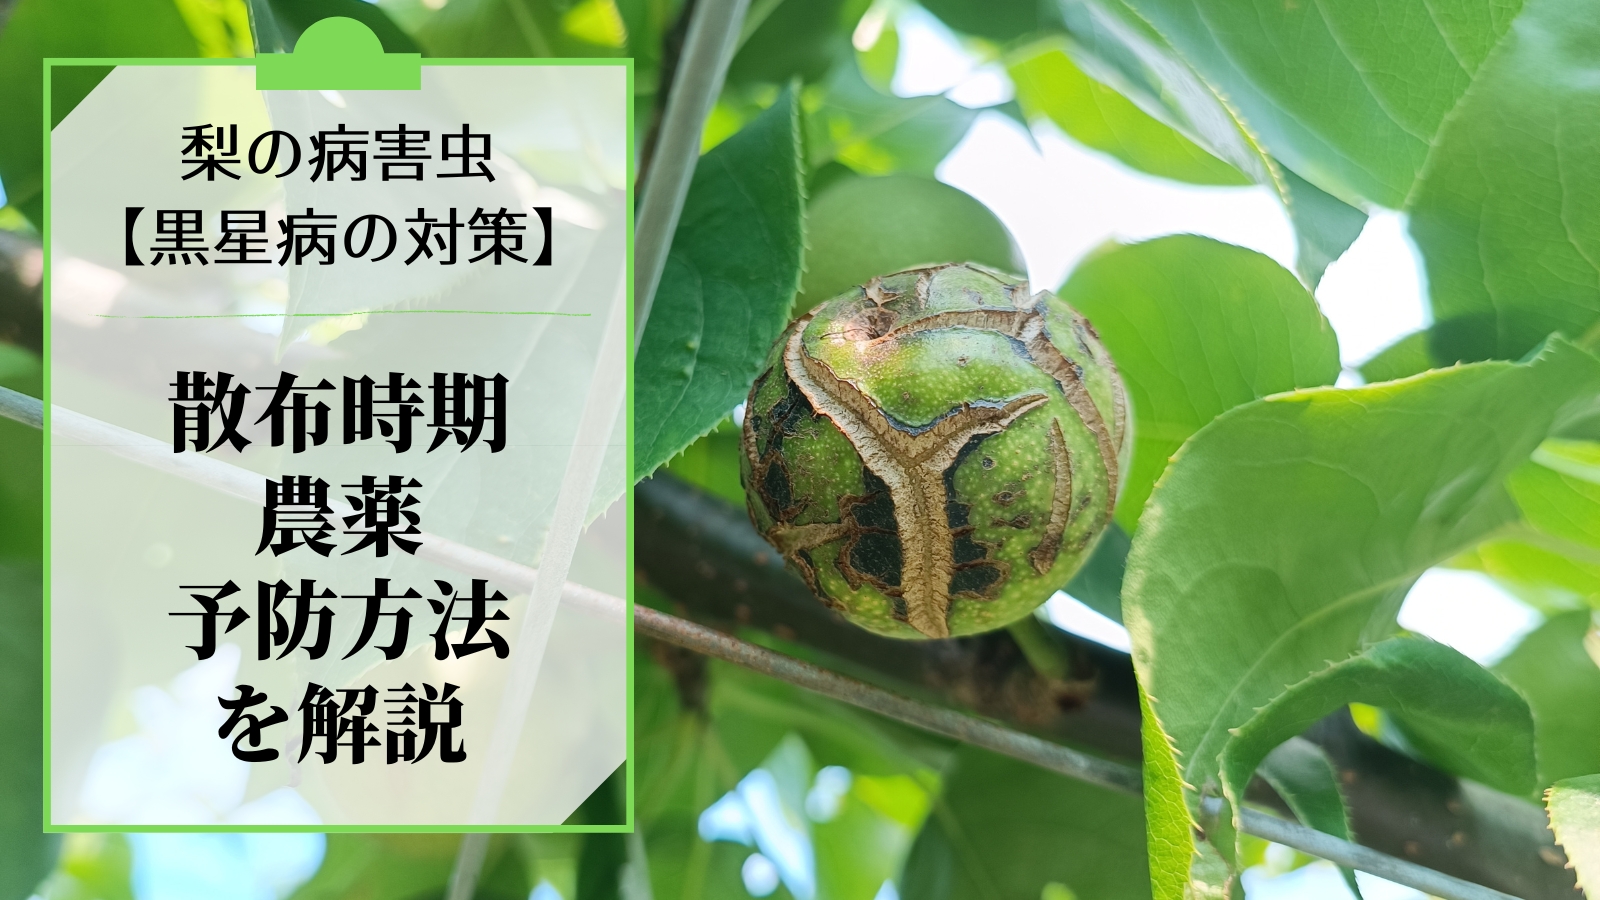 梨の黒星病の対策｜鱗片脱落期からの防除･農薬を解説 47